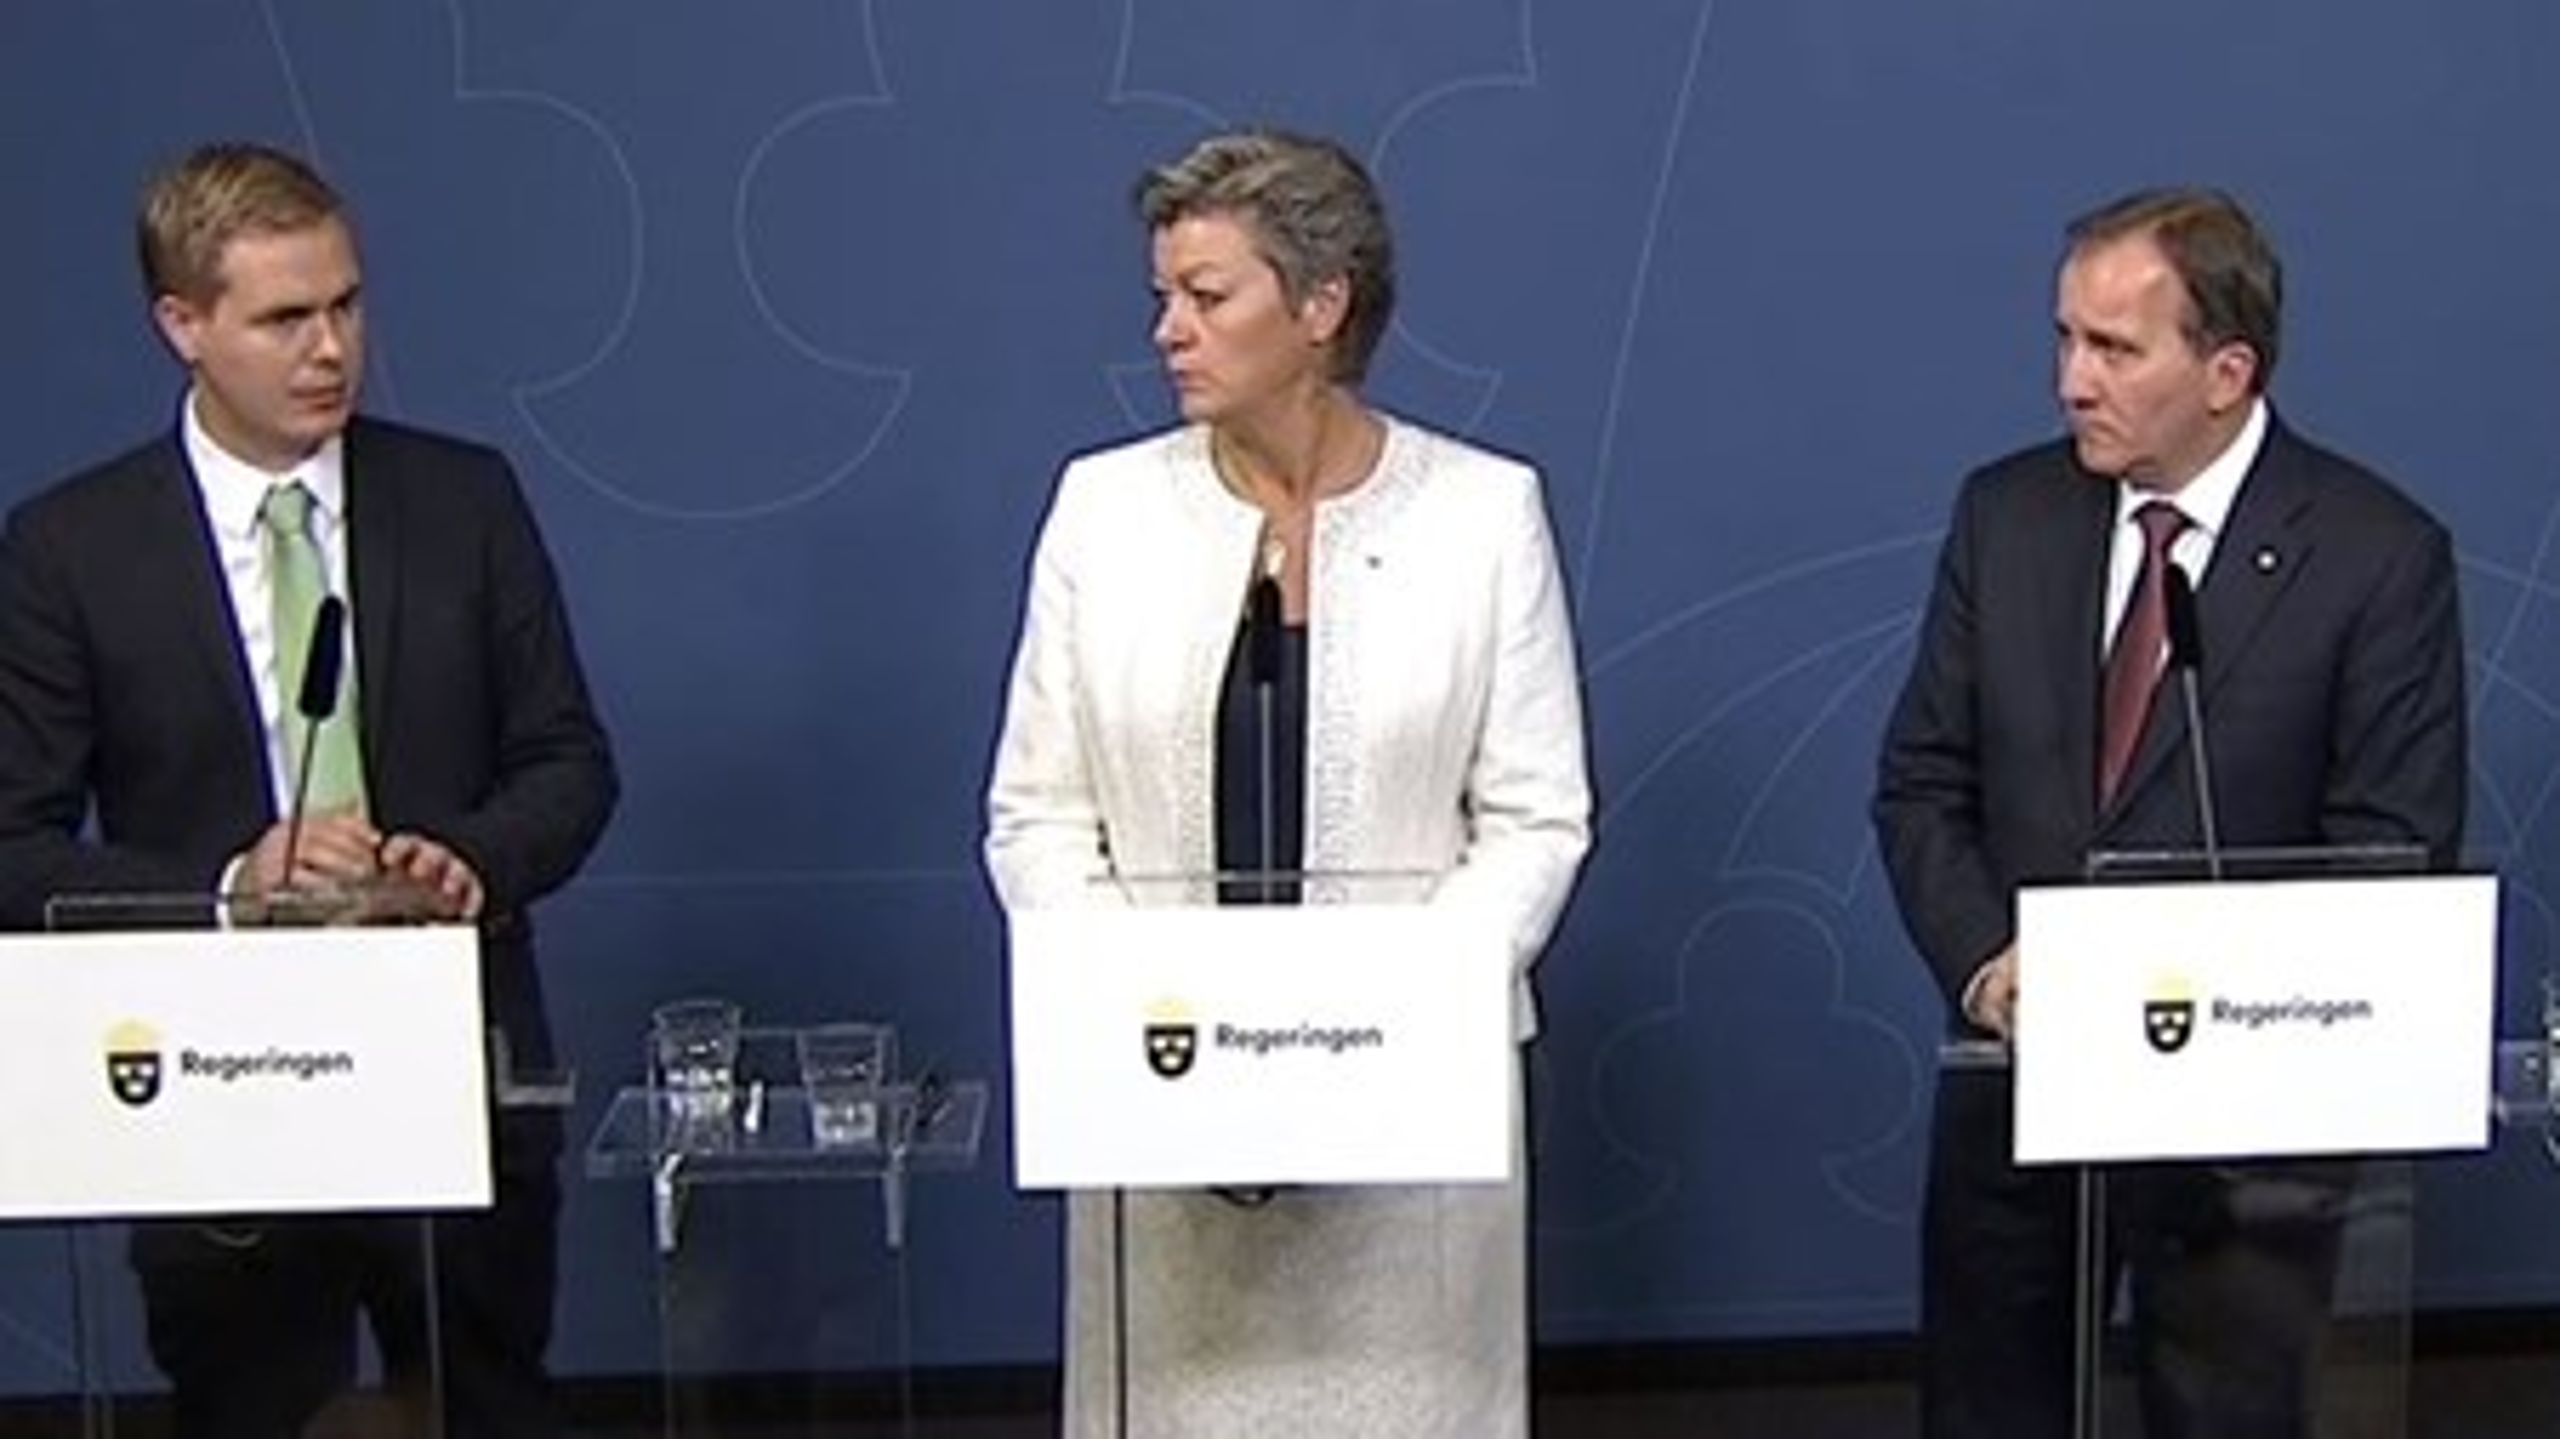 Utbildningsminister Gustav Fridolin (MP), arbetsmarknadsminister Ylva Johansson (S) och&nbsp;statsminister Stefan Löfven (S) på pressträff om etablering av nyanlända.